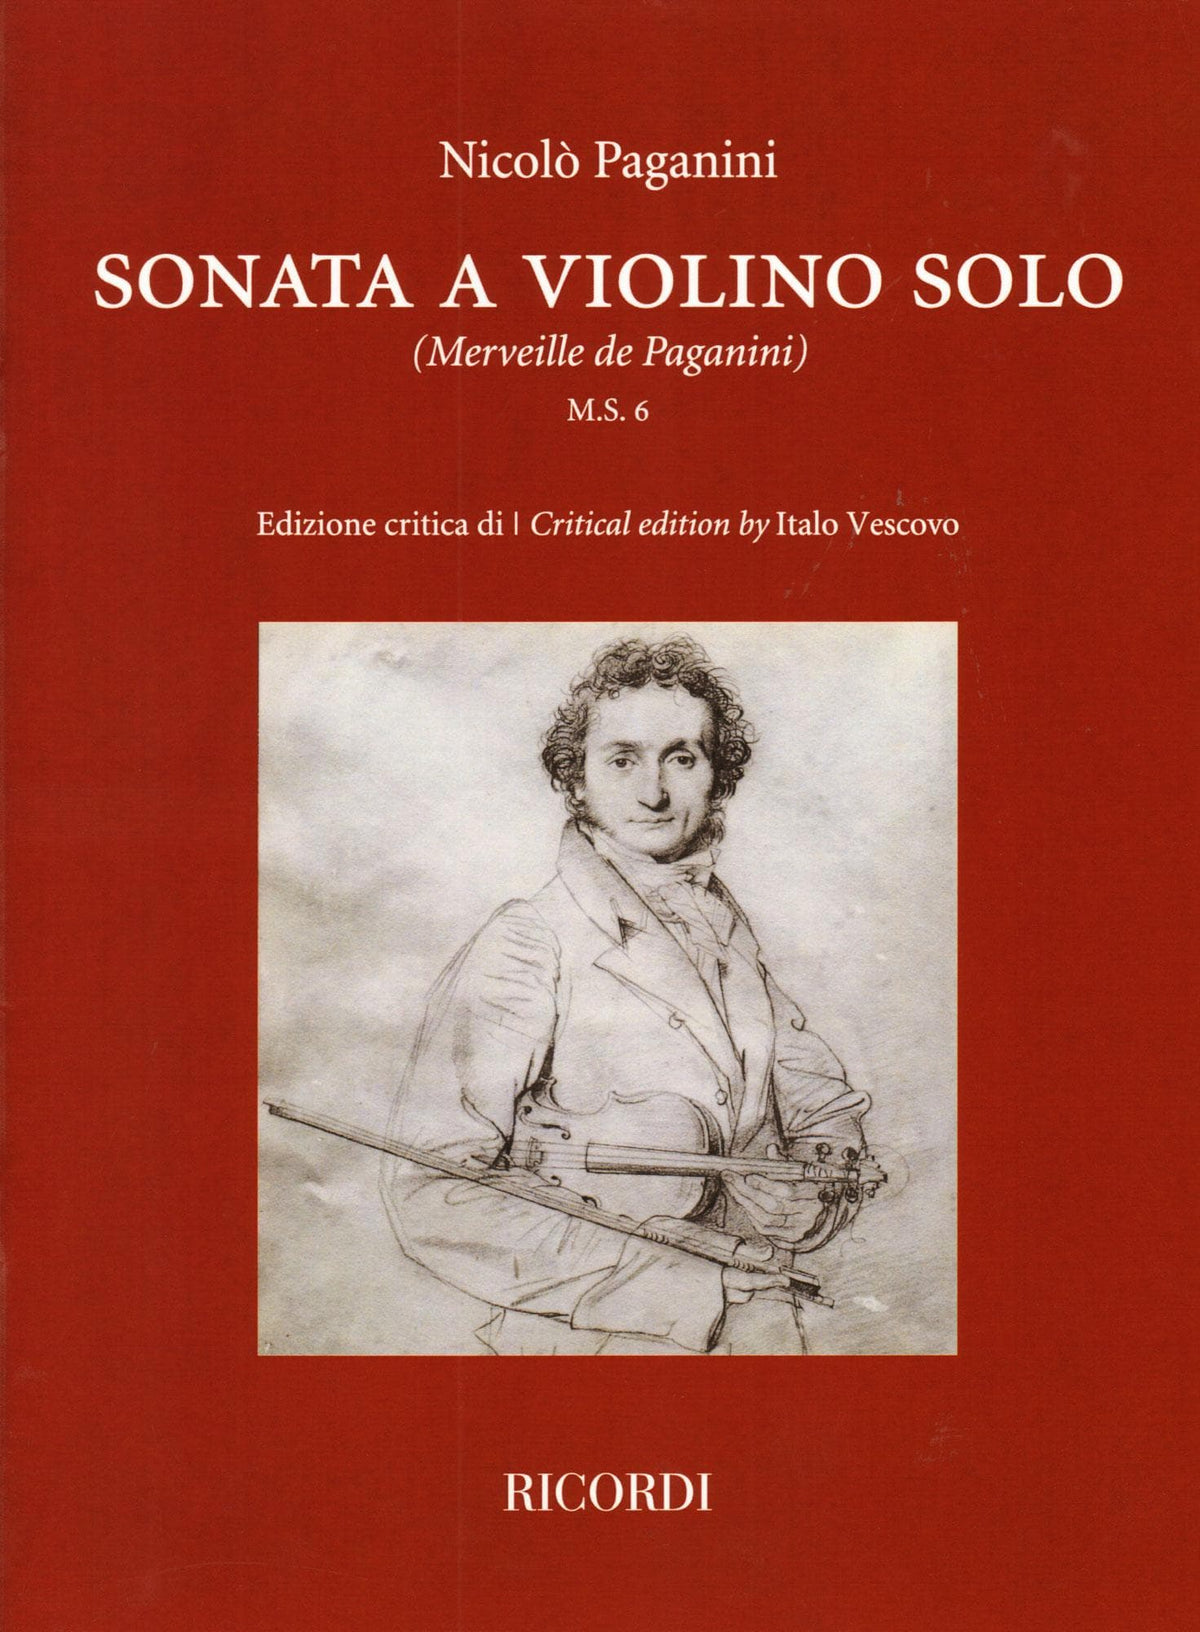 Paganini, Nicolo - Sonata for Solo Violin (Merveille de Paganini, M.S. 6) - Critical Edition by Italo Vescovo - Ricordi